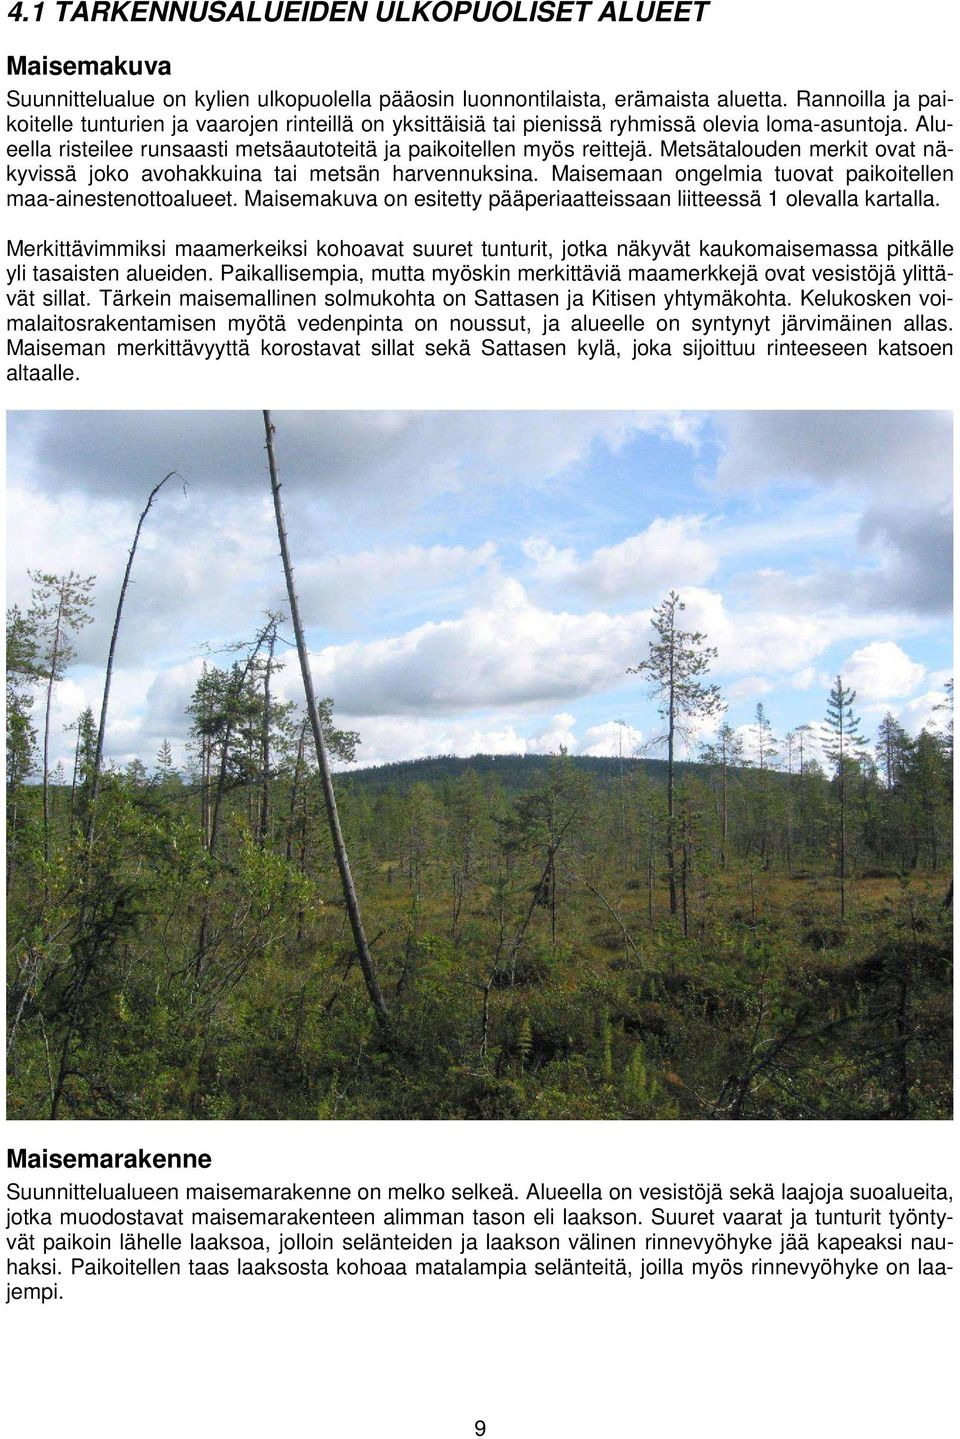 Metsätalouden merkit ovat näkyvissä joko avohakkuina tai metsän harvennuksina. Maisemaan ongelmia tuovat paikoitellen maa-ainestenottoalueet.